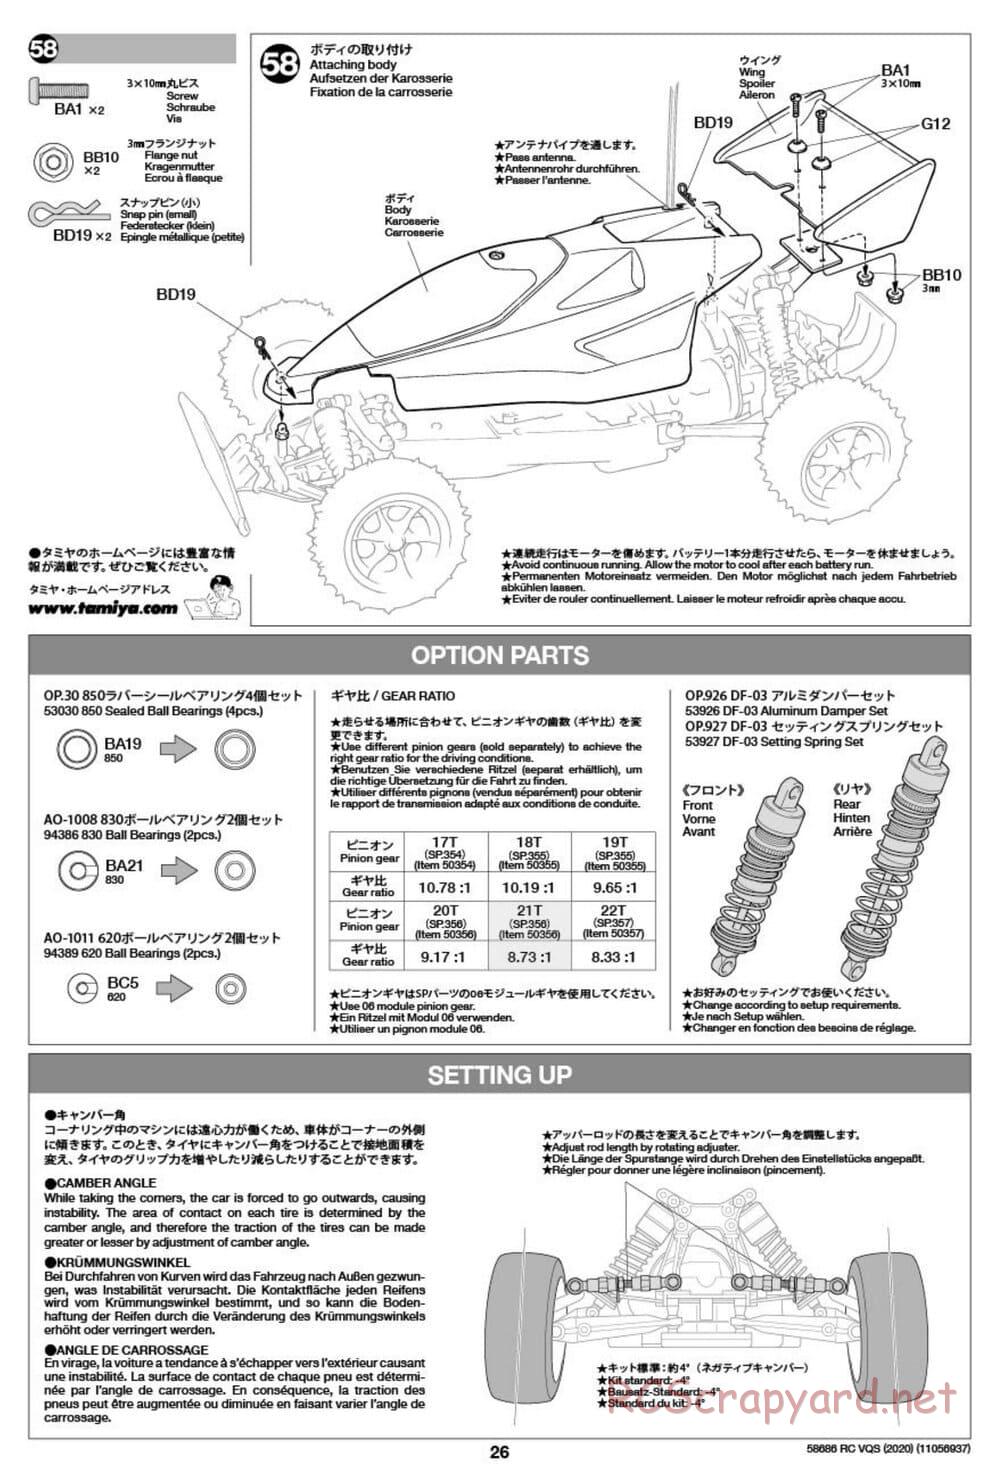 Tamiya - VQS (2020) - AV Chassis - Manual - Page 26